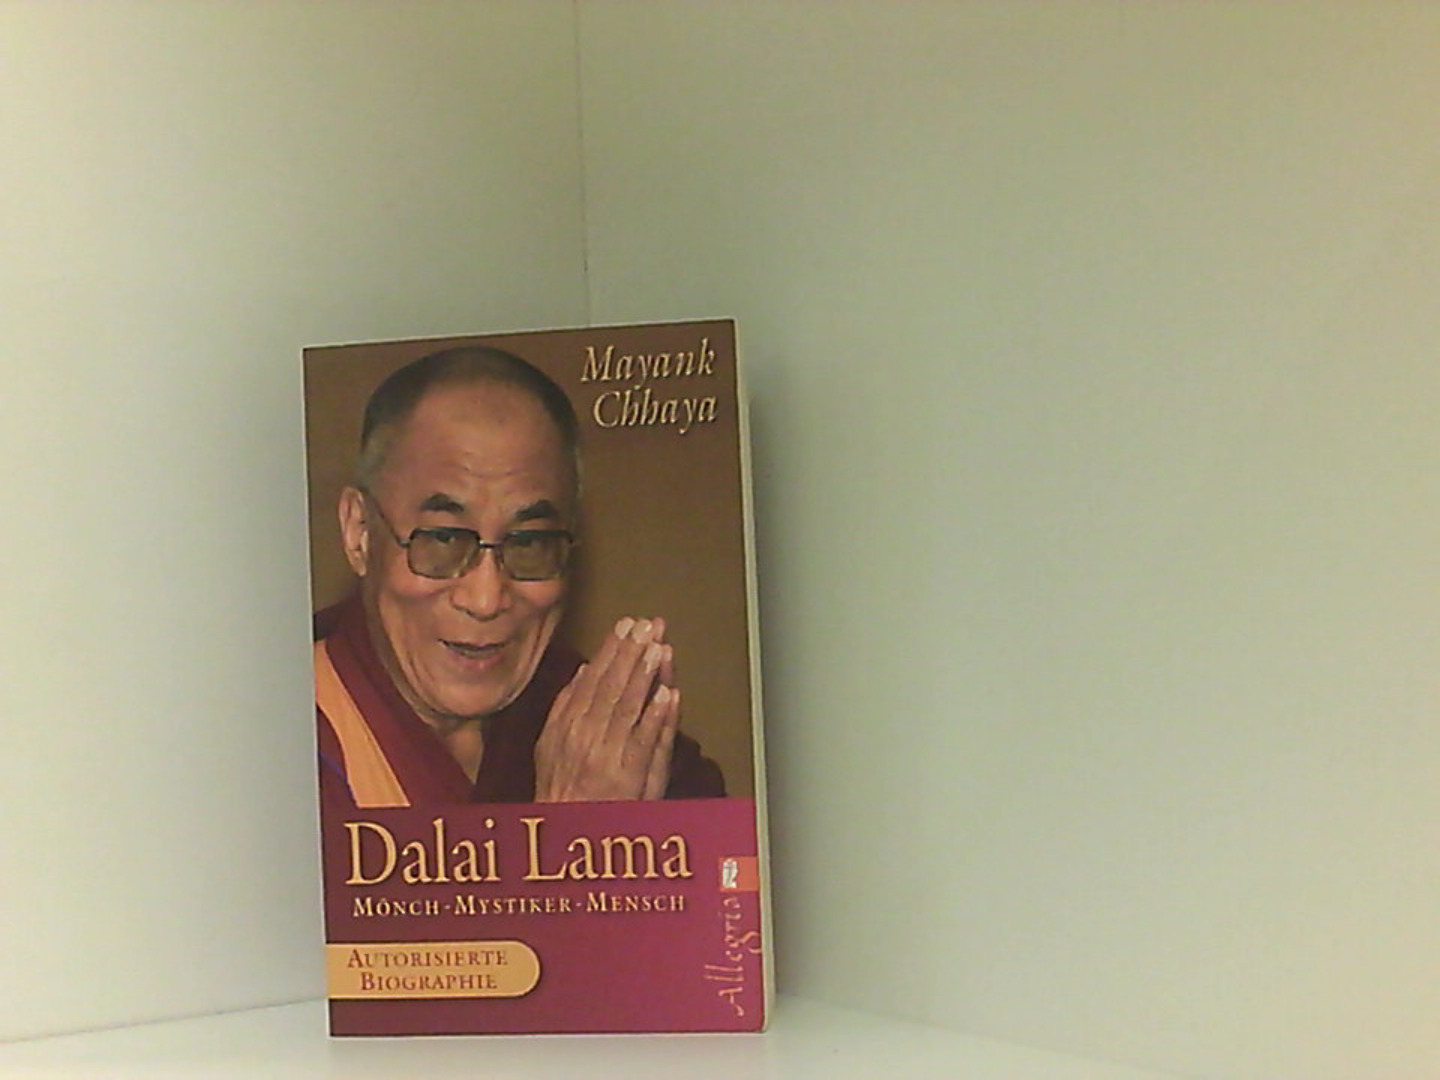 Dalai Lama: Mönch, Mystiker, Mensch - Die autorisierte Biografie  Aktualisierte Neuausg., 1. Aufl. - Chhaya, Mayank